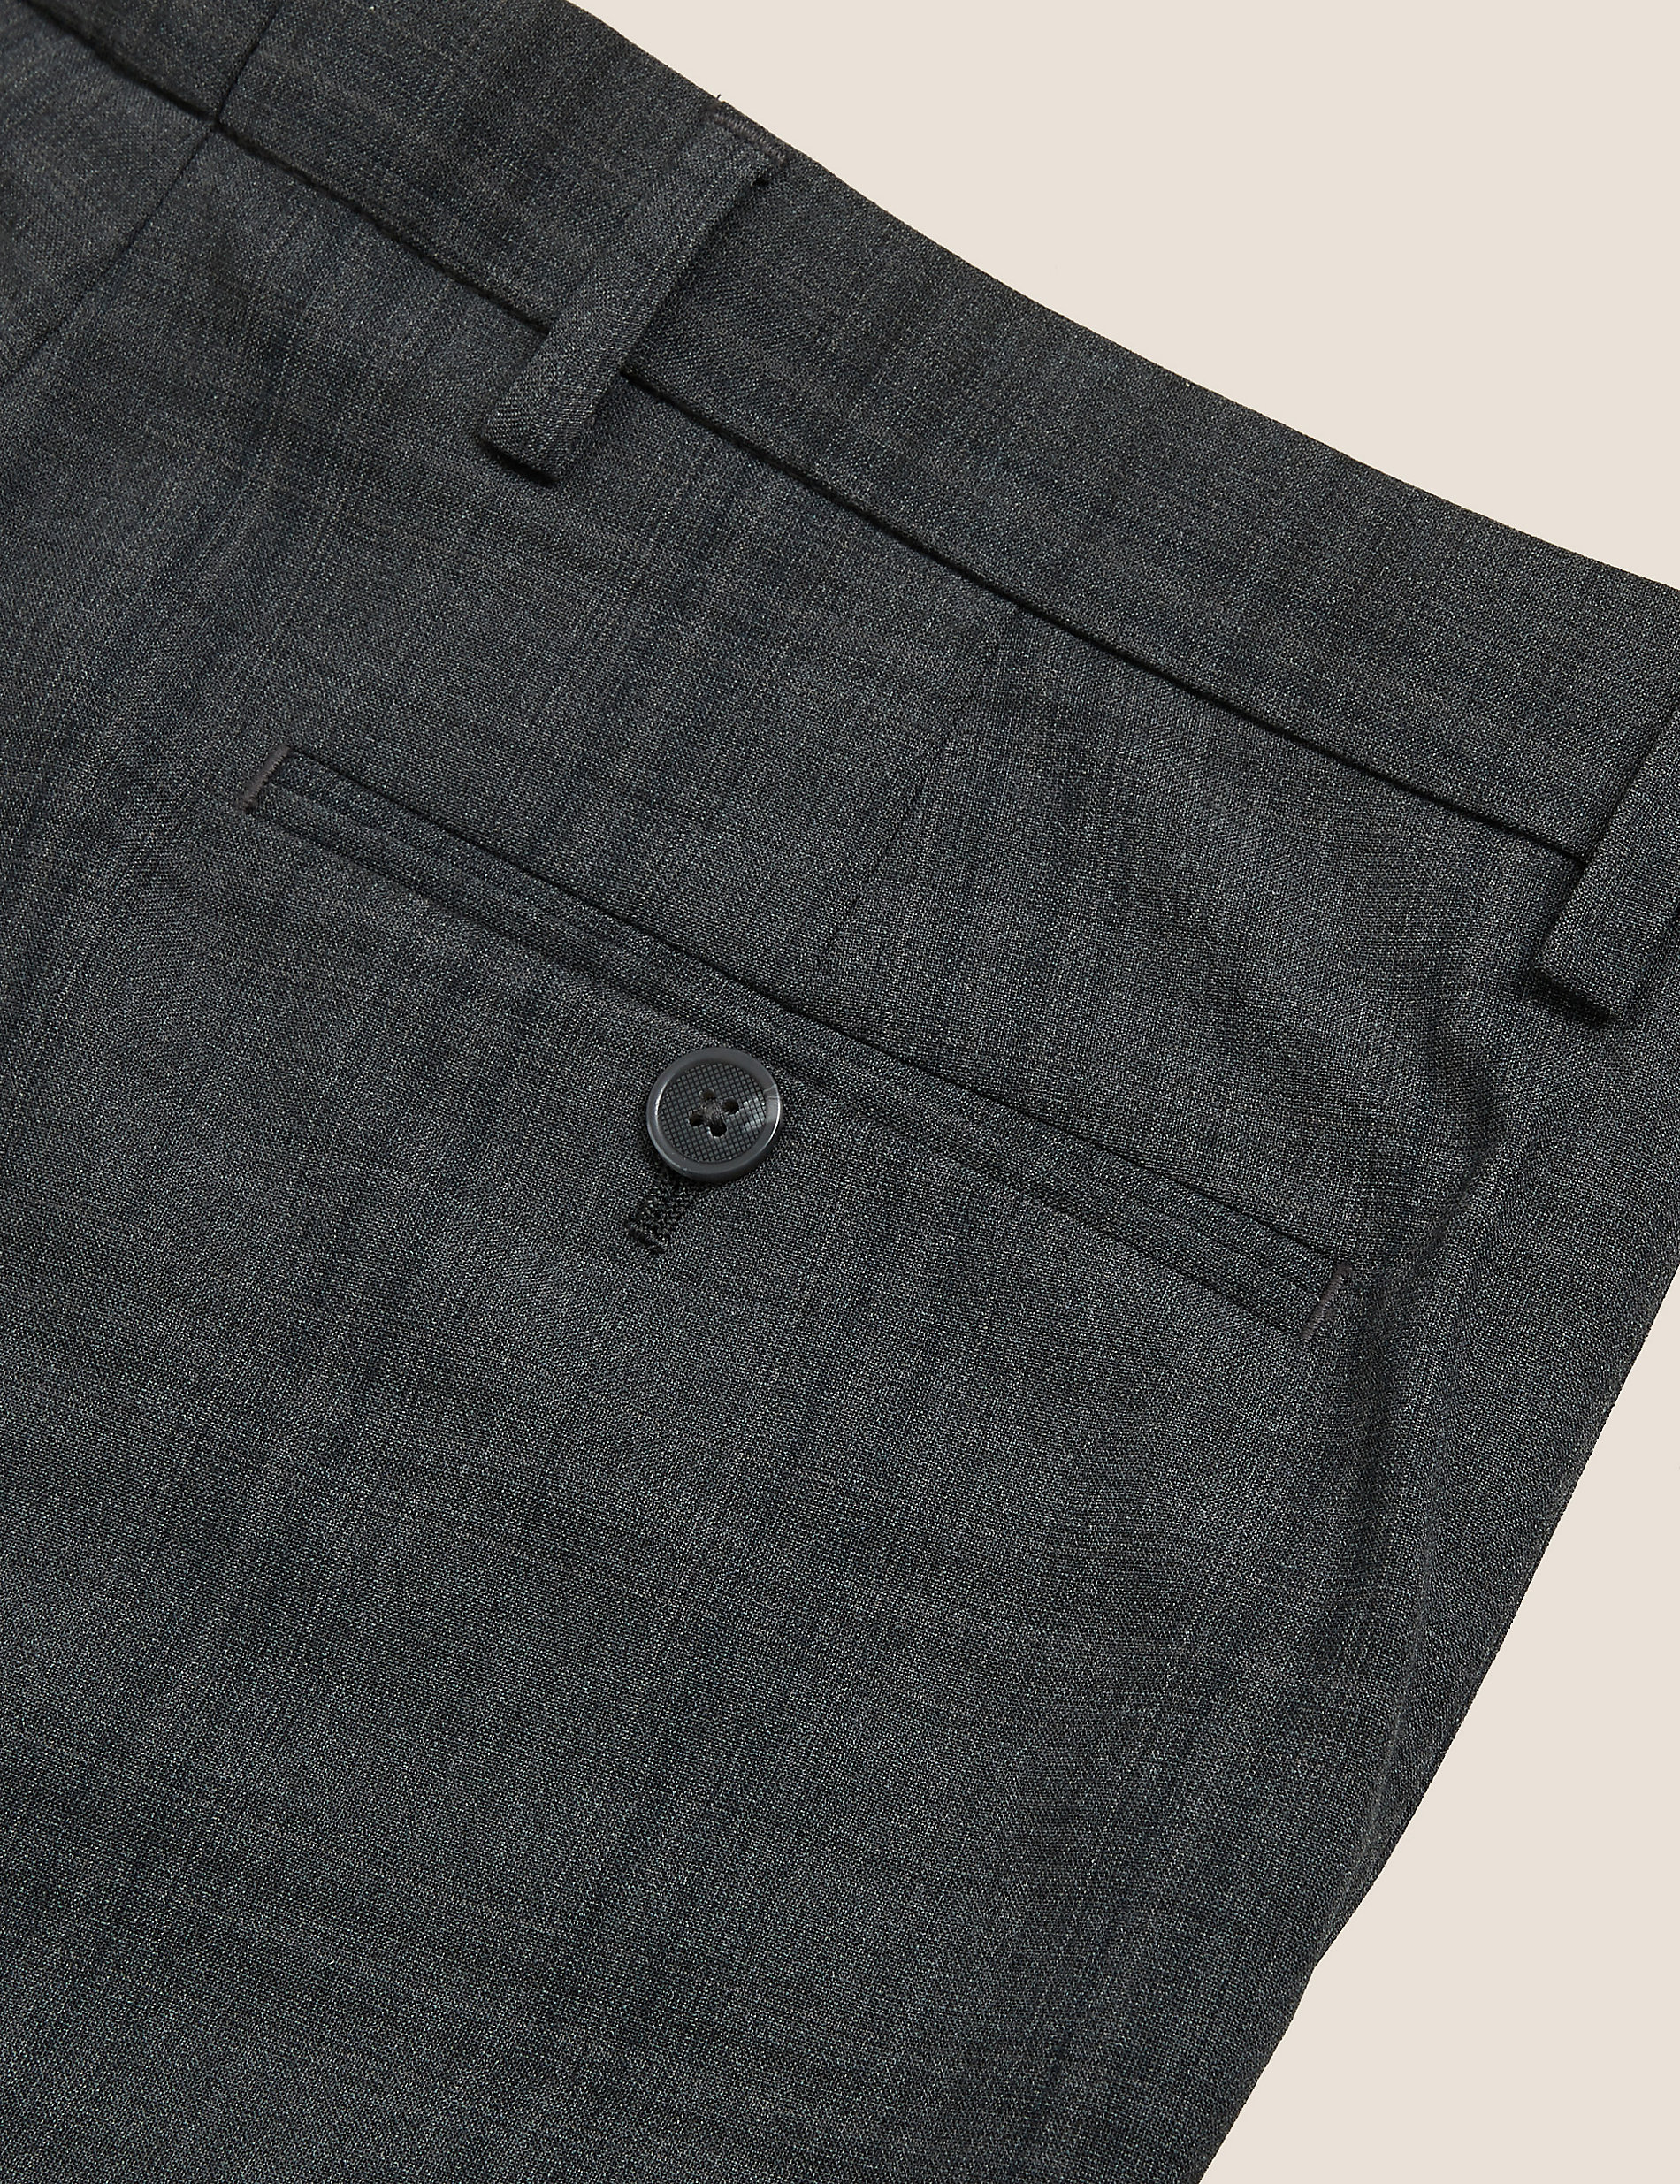 Pantalon coupe ajustée en laine mélangée à carreaux couleur charbon